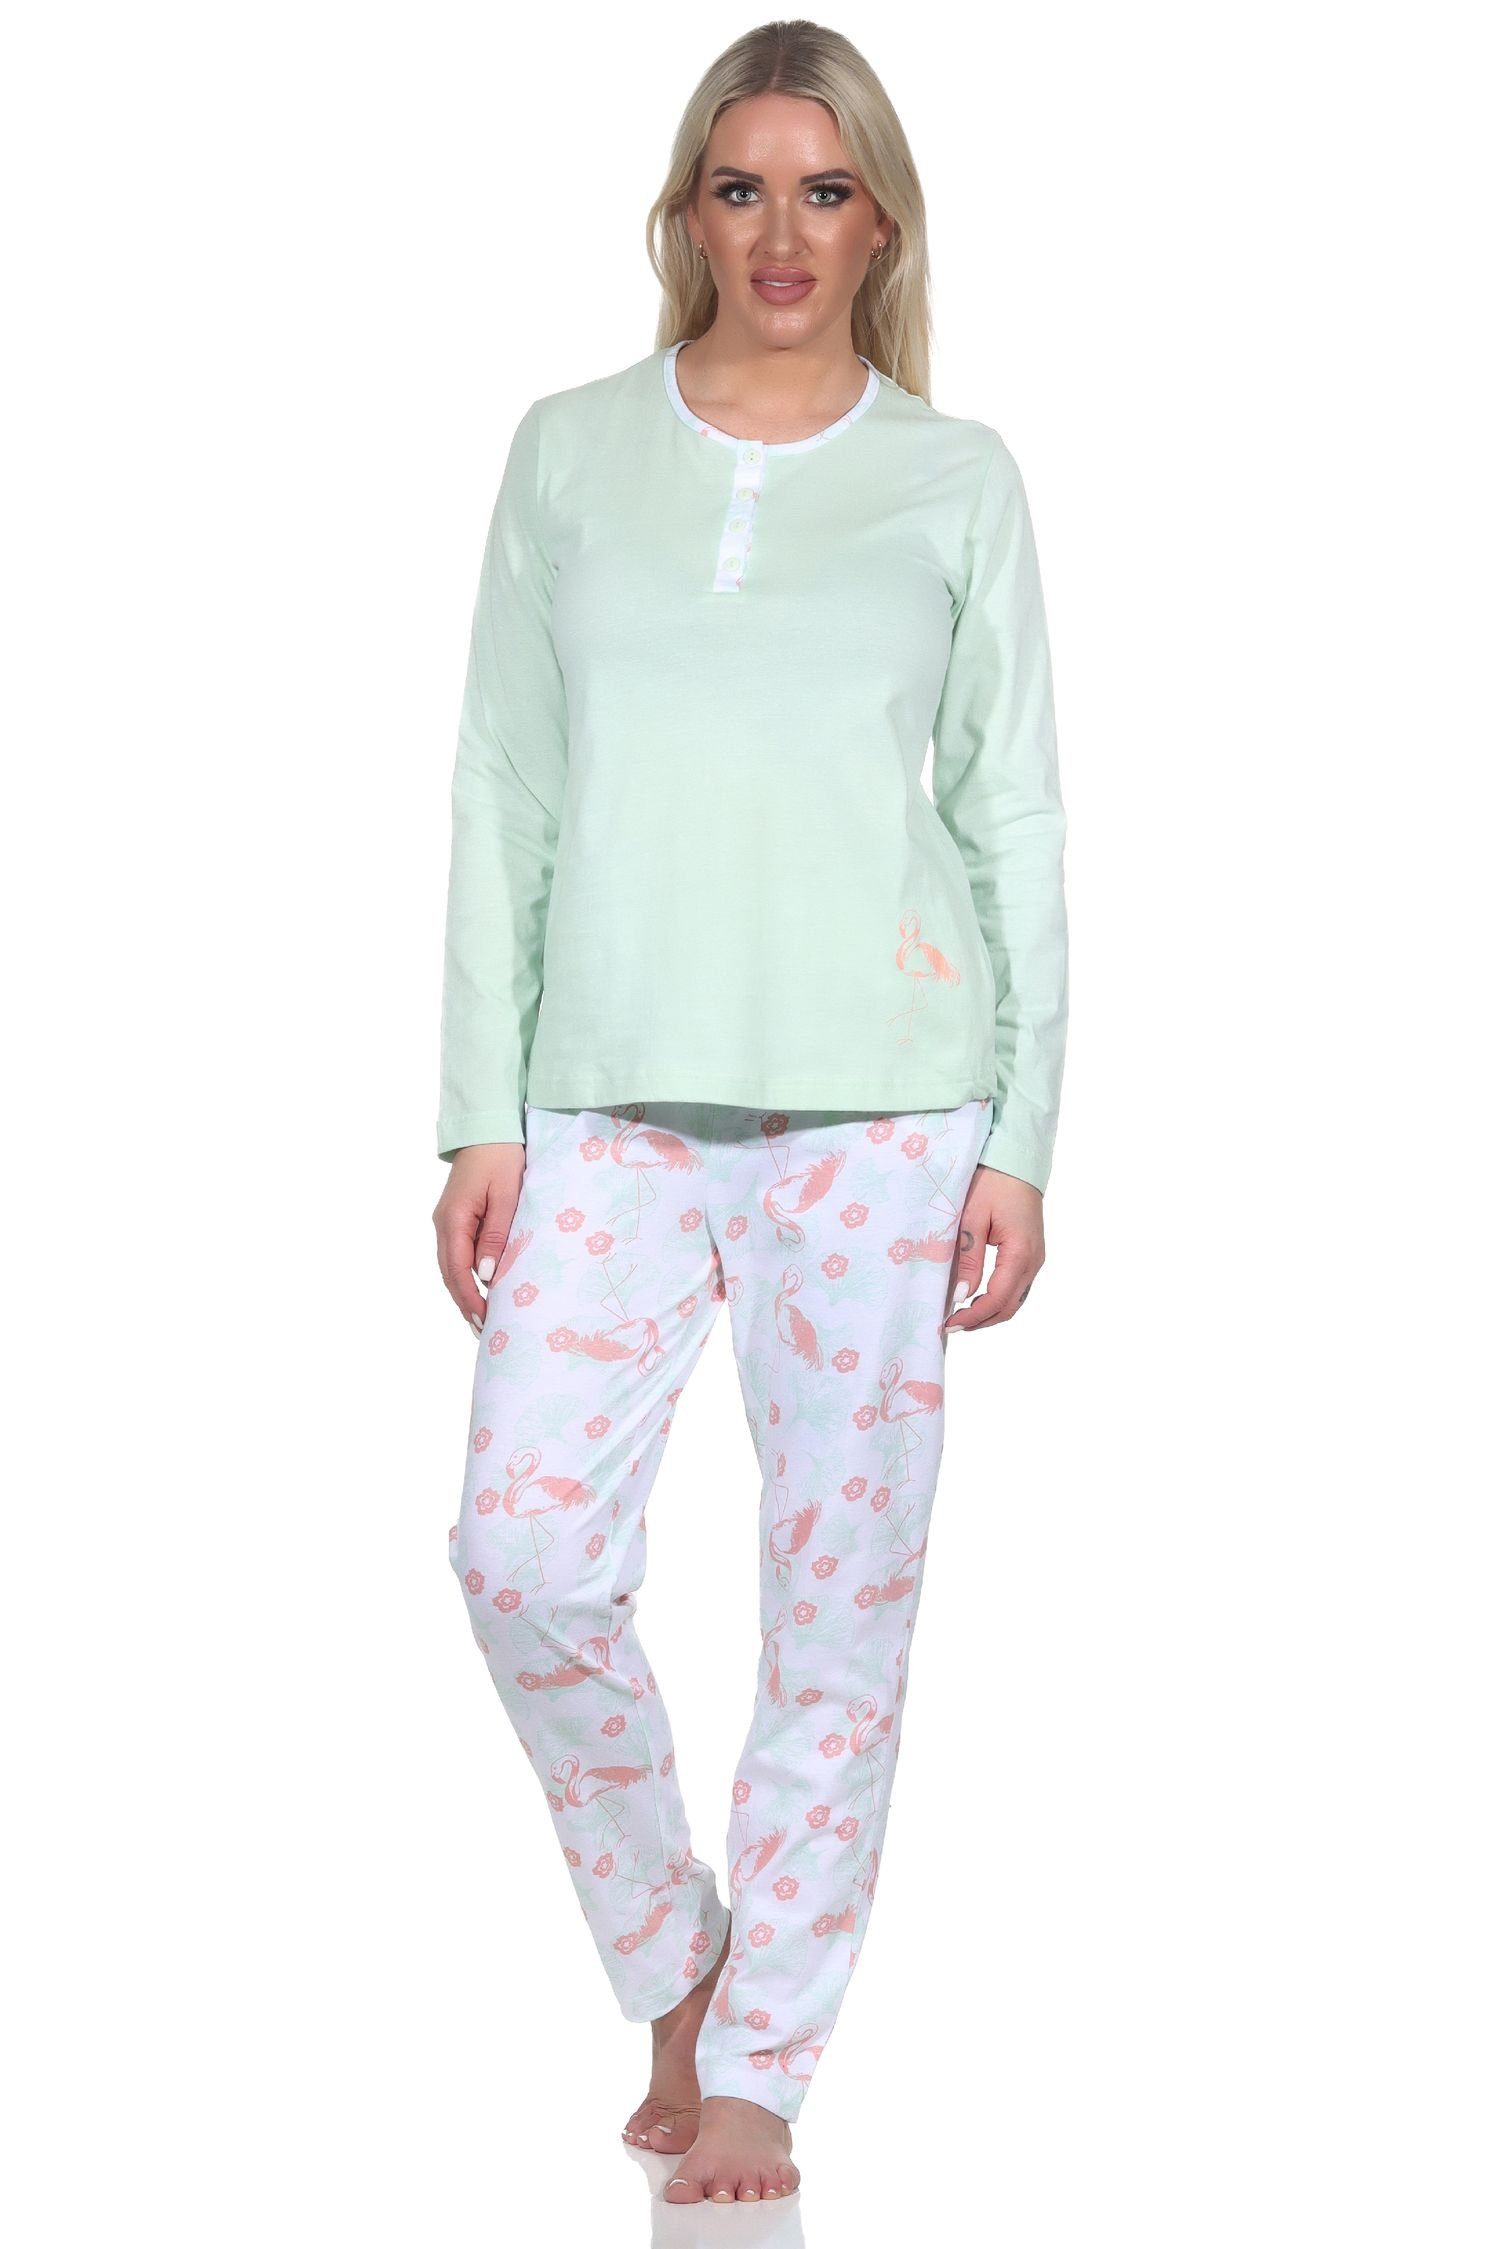 Normann Pyjama Damen Schlafanzug Langarm mit Flamingo Motiv und Knopfleiste am Hals grün